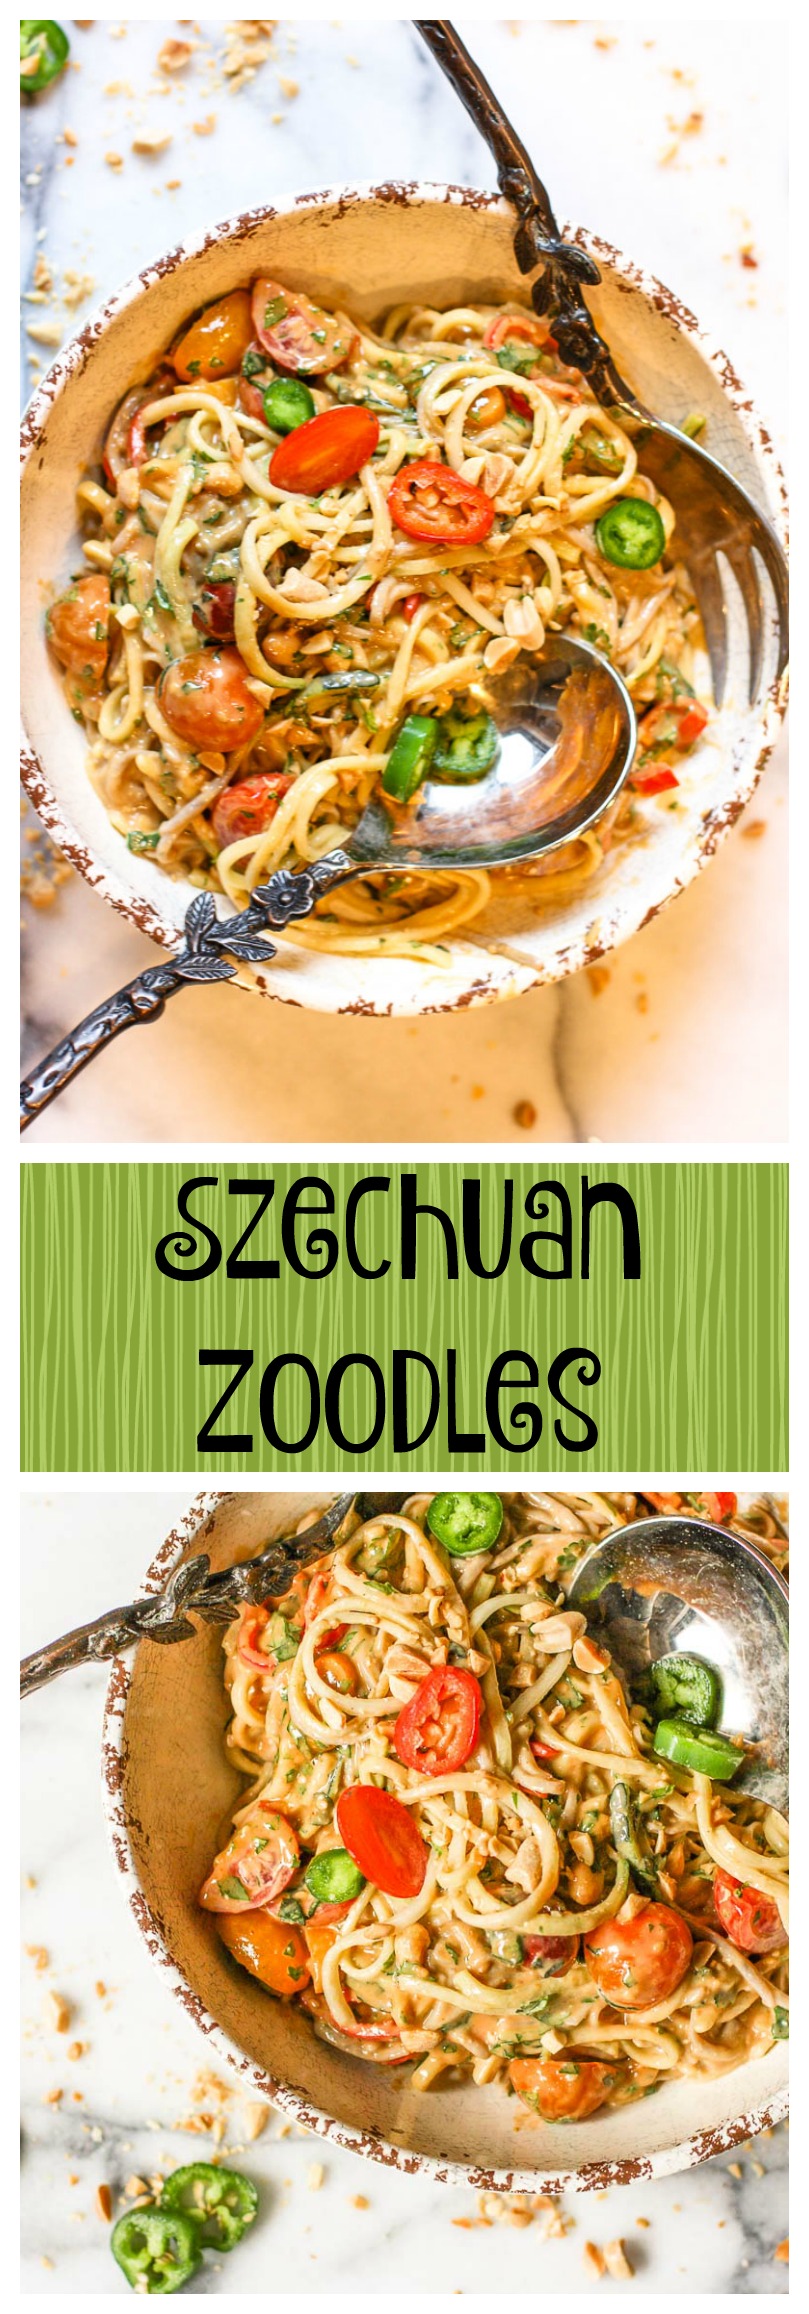 szechuan zoodles